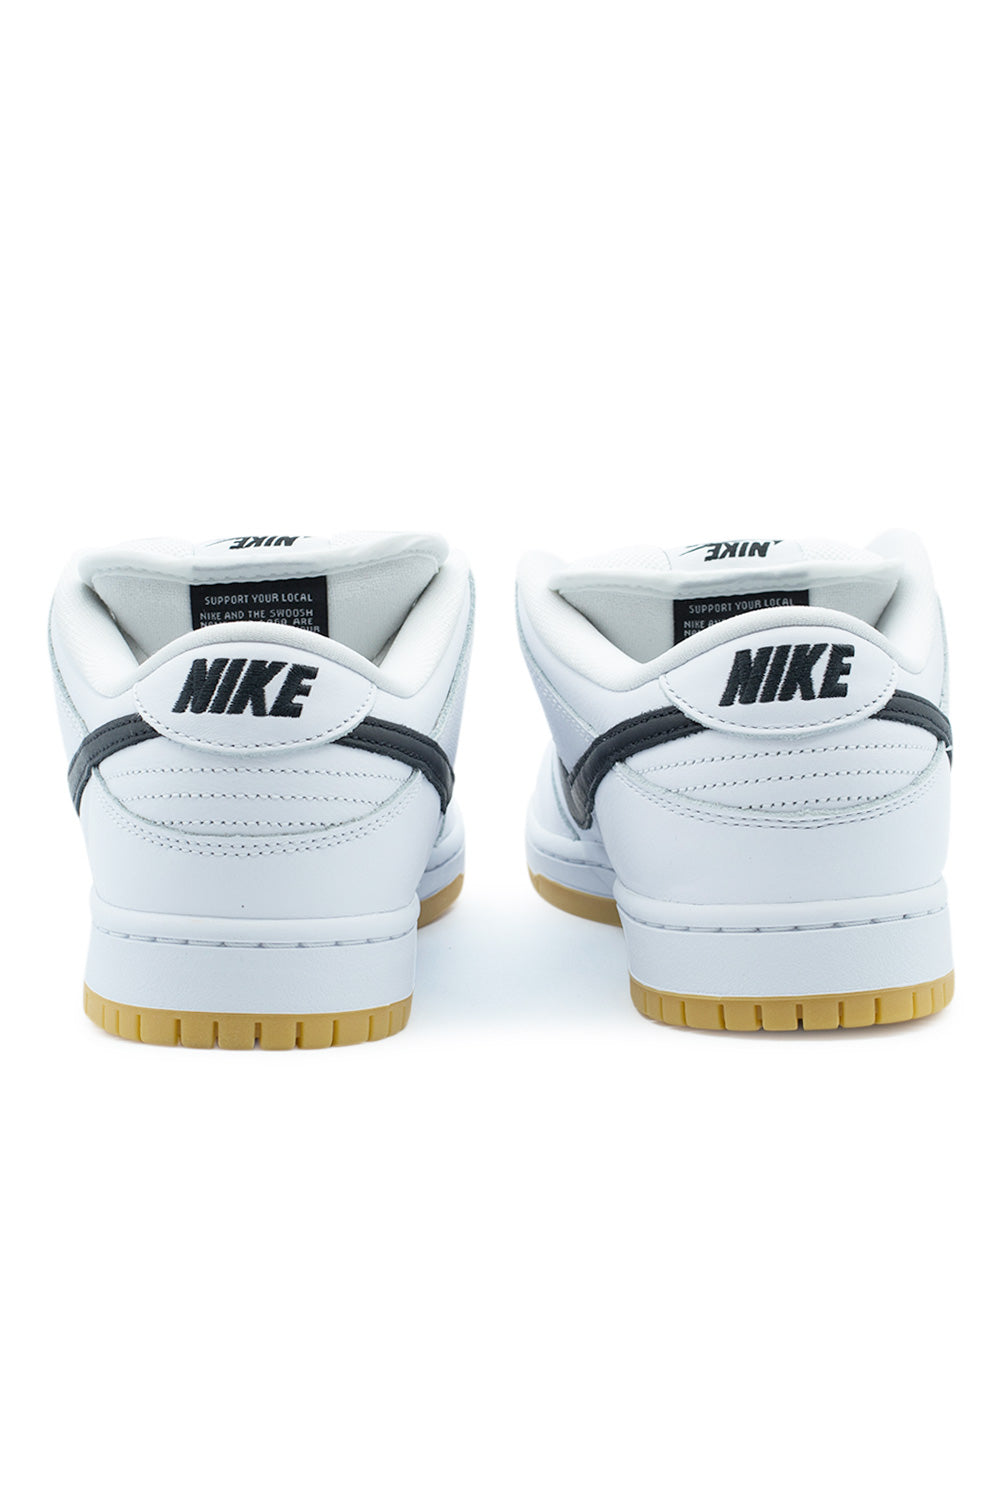 Nike SB Dunk Low Pro Shoe White / Black / White - BONKERS